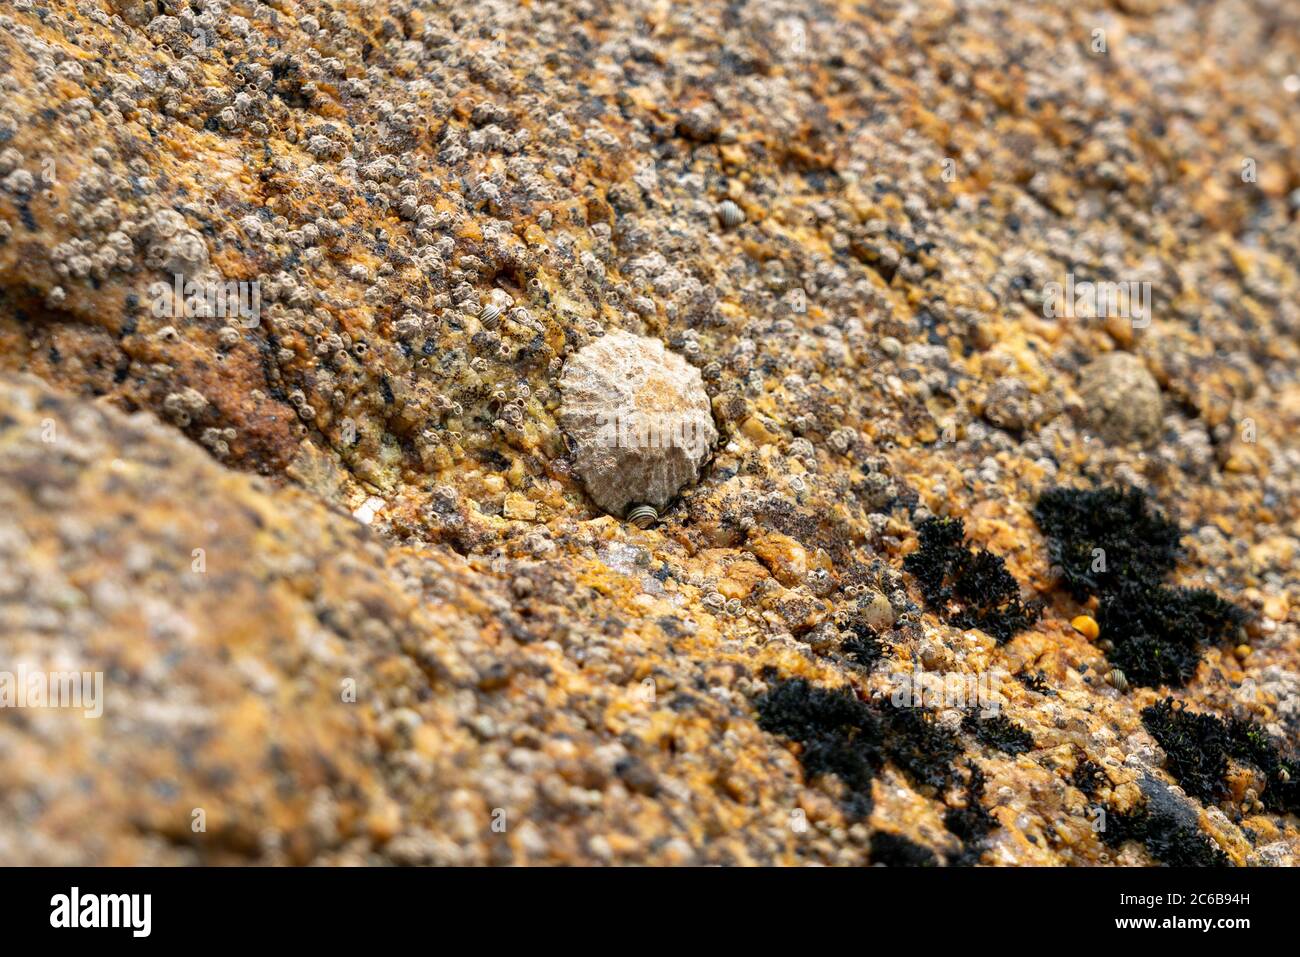 Primo piano di una lima (patella vulgata) su una superficie rocciosa vicino al mare Foto Stock